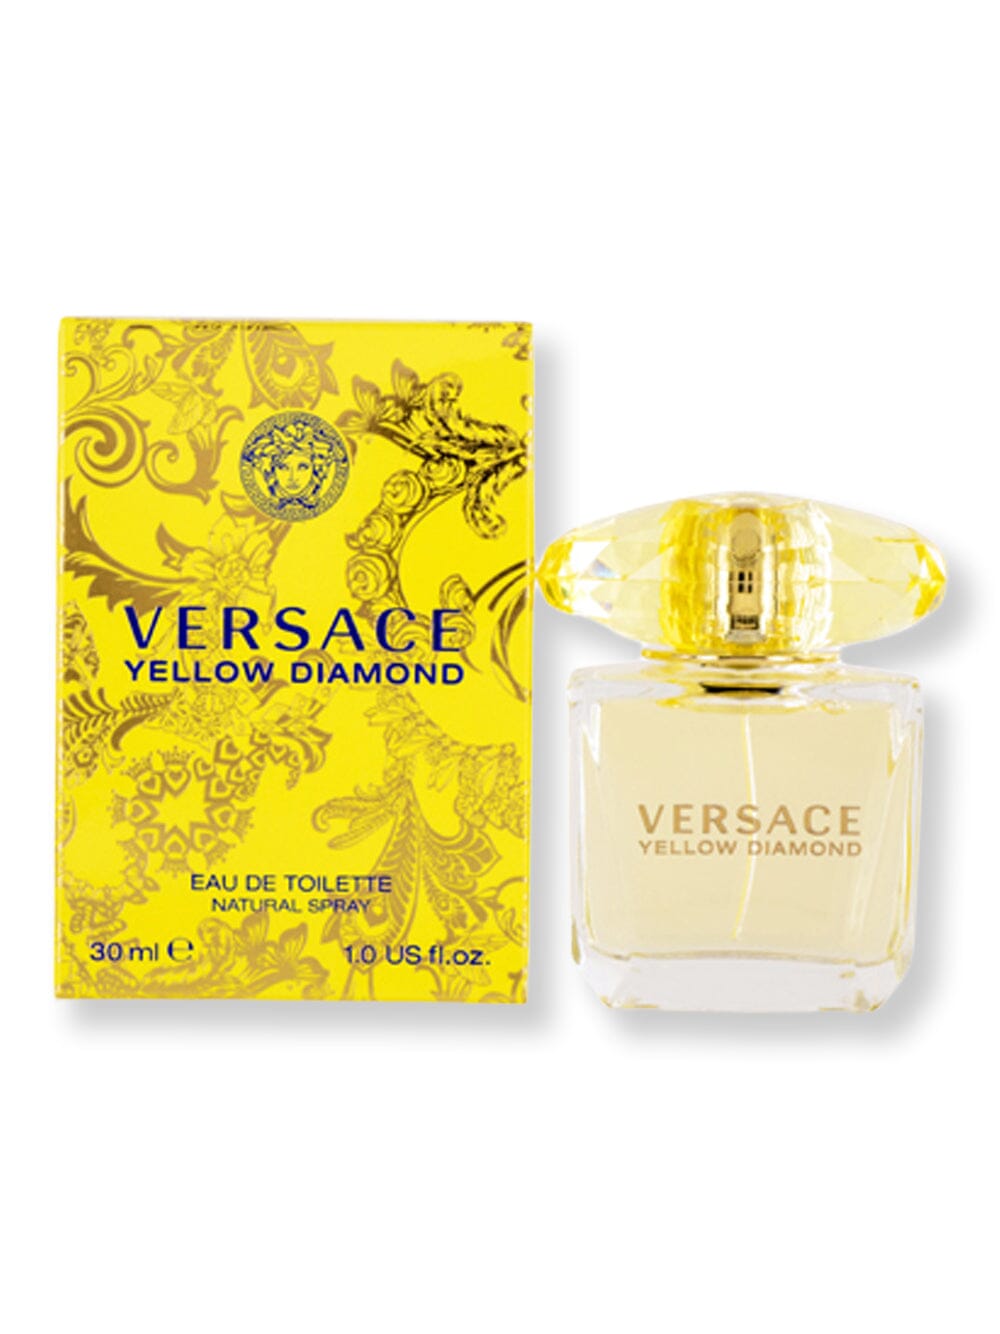 Versace Versace Yellow Diamond EDT Spray 1 oz Perfume 